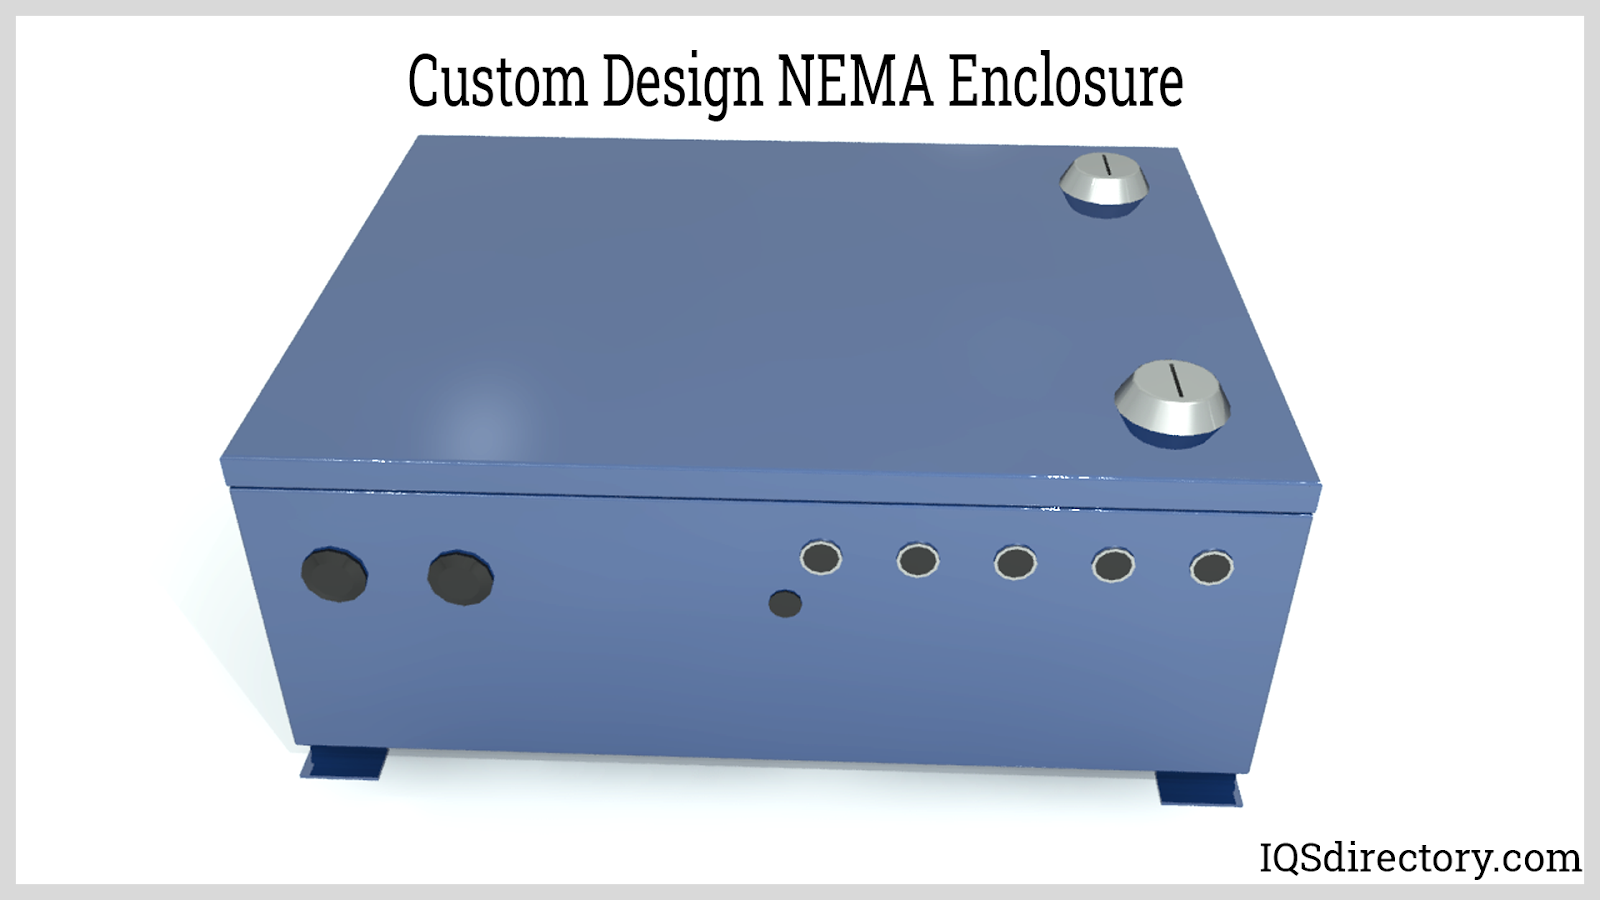 Custom Design NEMA Enclosure for Equipto Electronics